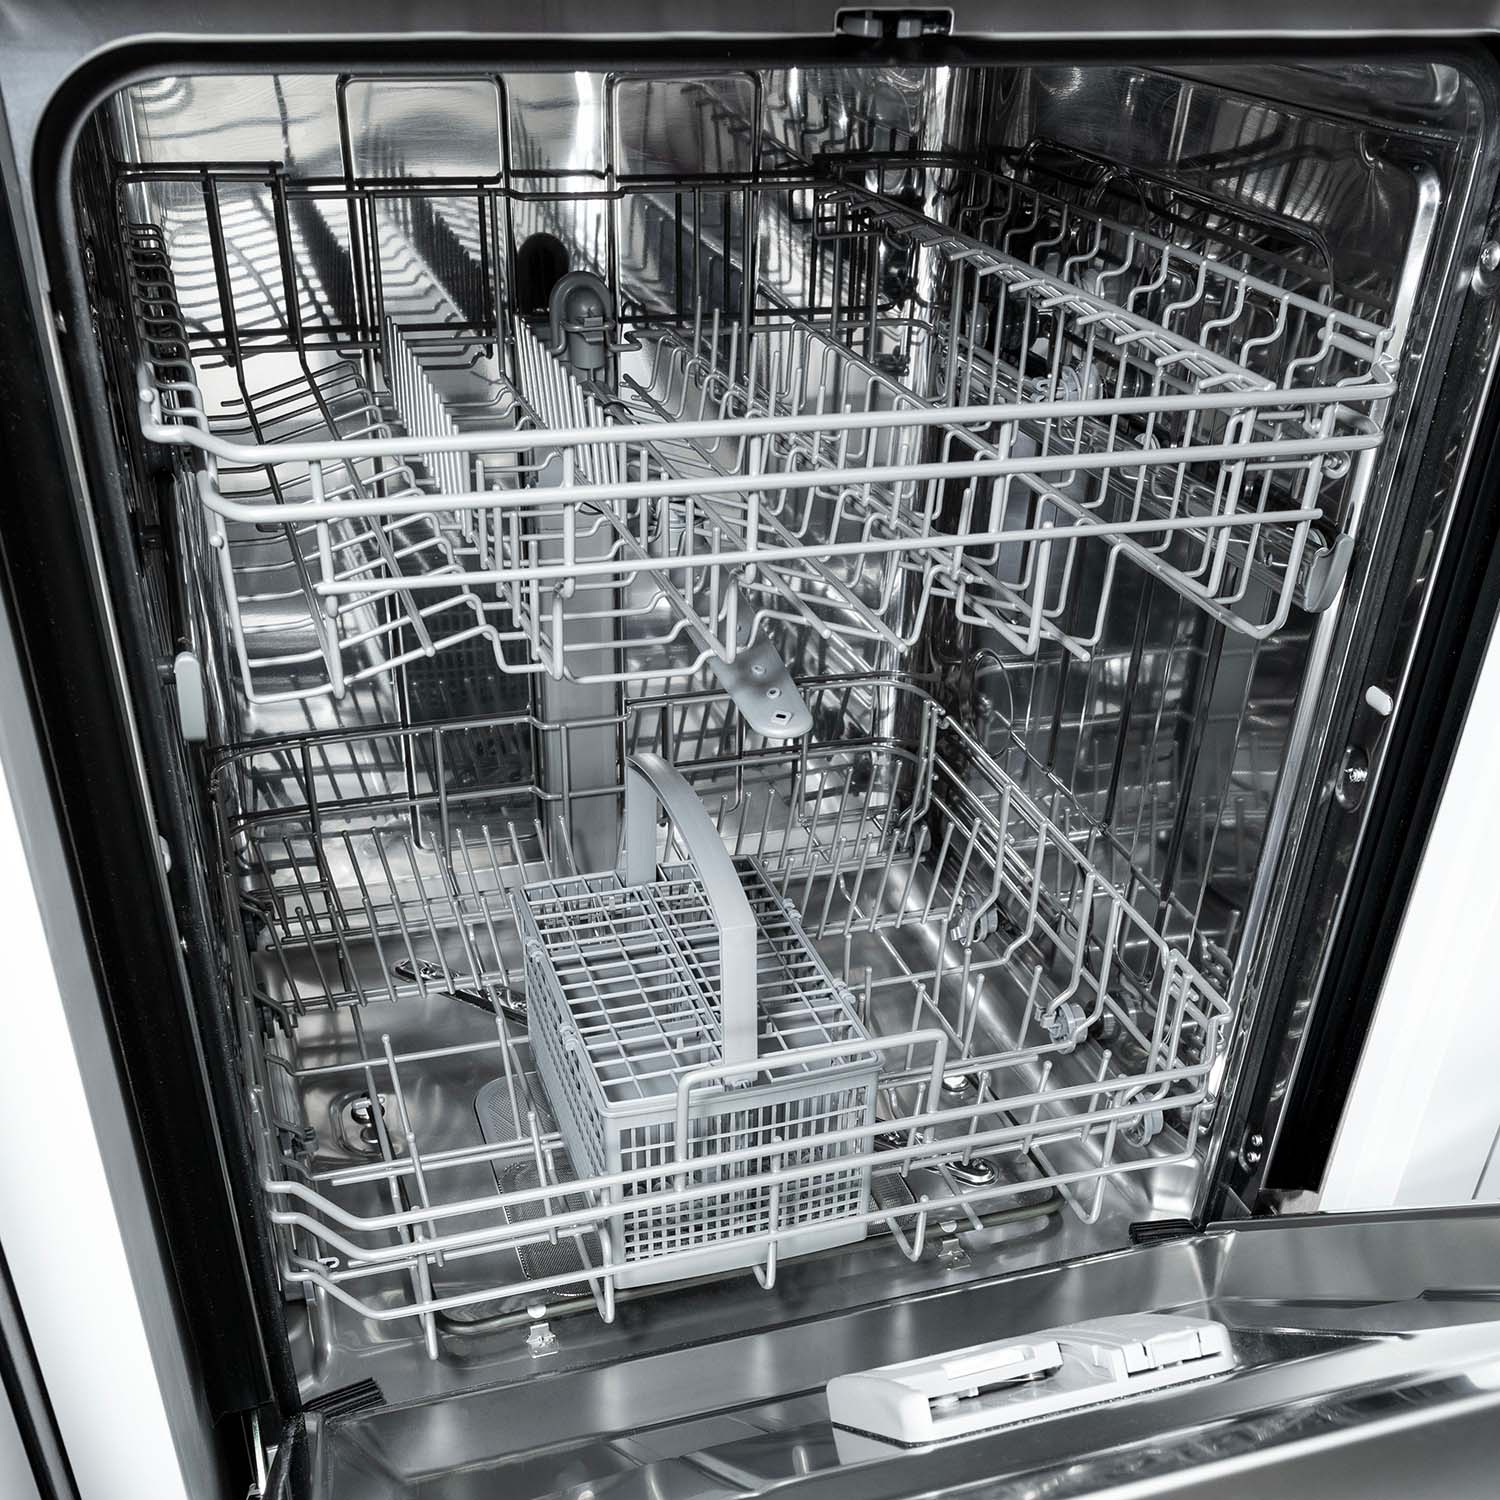 ZLINE 24" dishwasher with stainless steel door open empty.